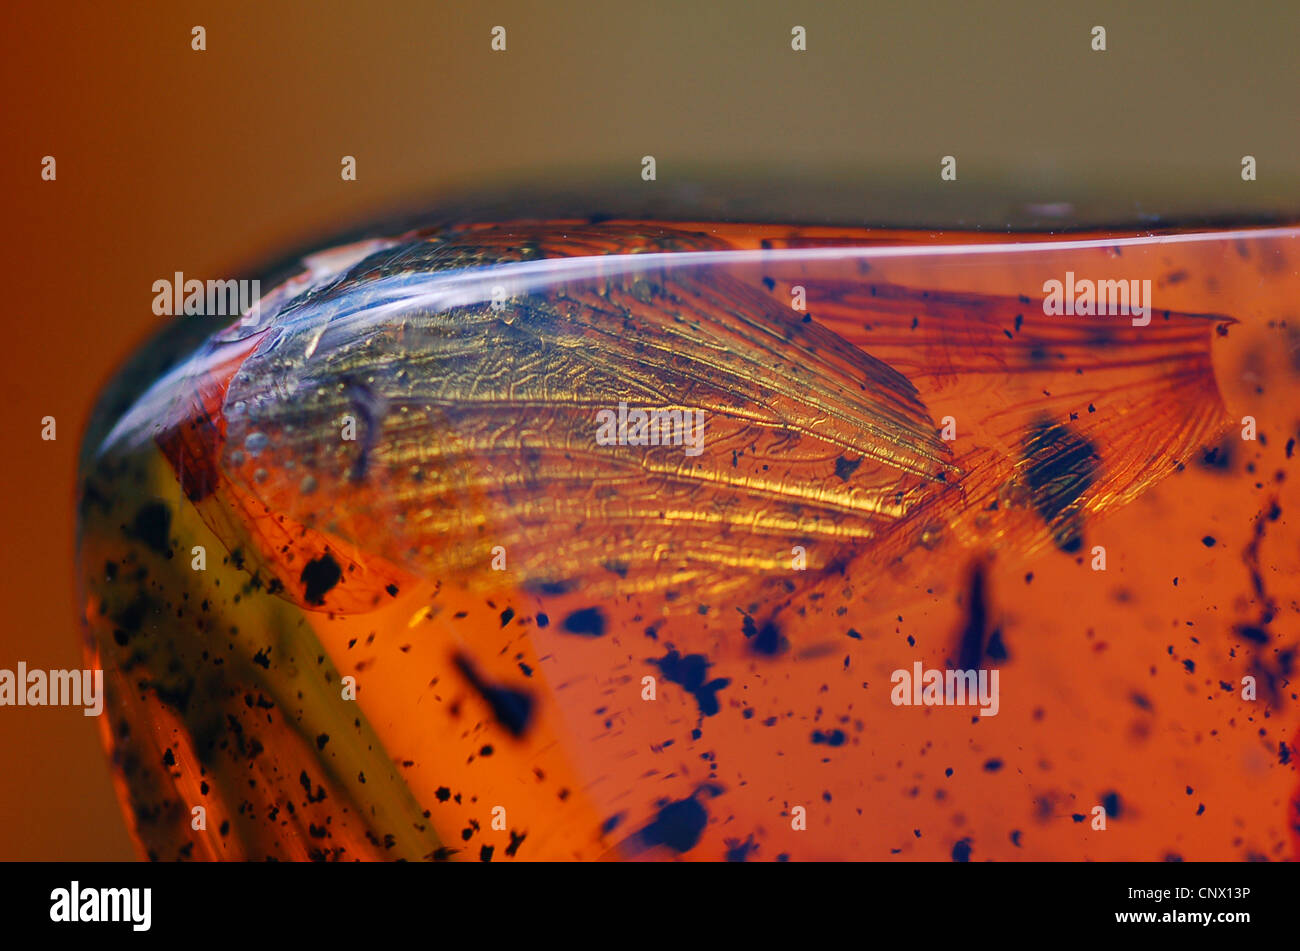 Larva de termitas en ámbar Mexicano (piedra bruta) con inclusiones de alas de insectos Foto de stock